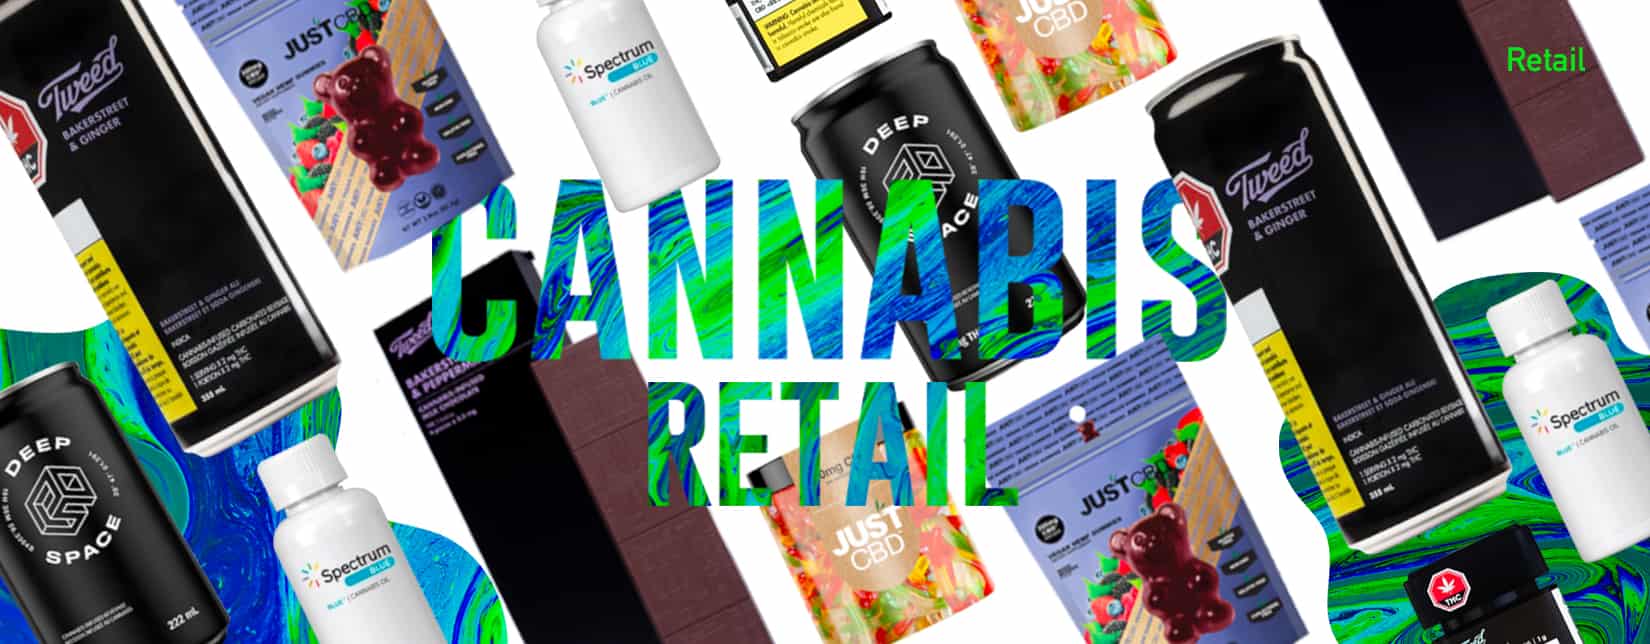 bioretail cannabis retail